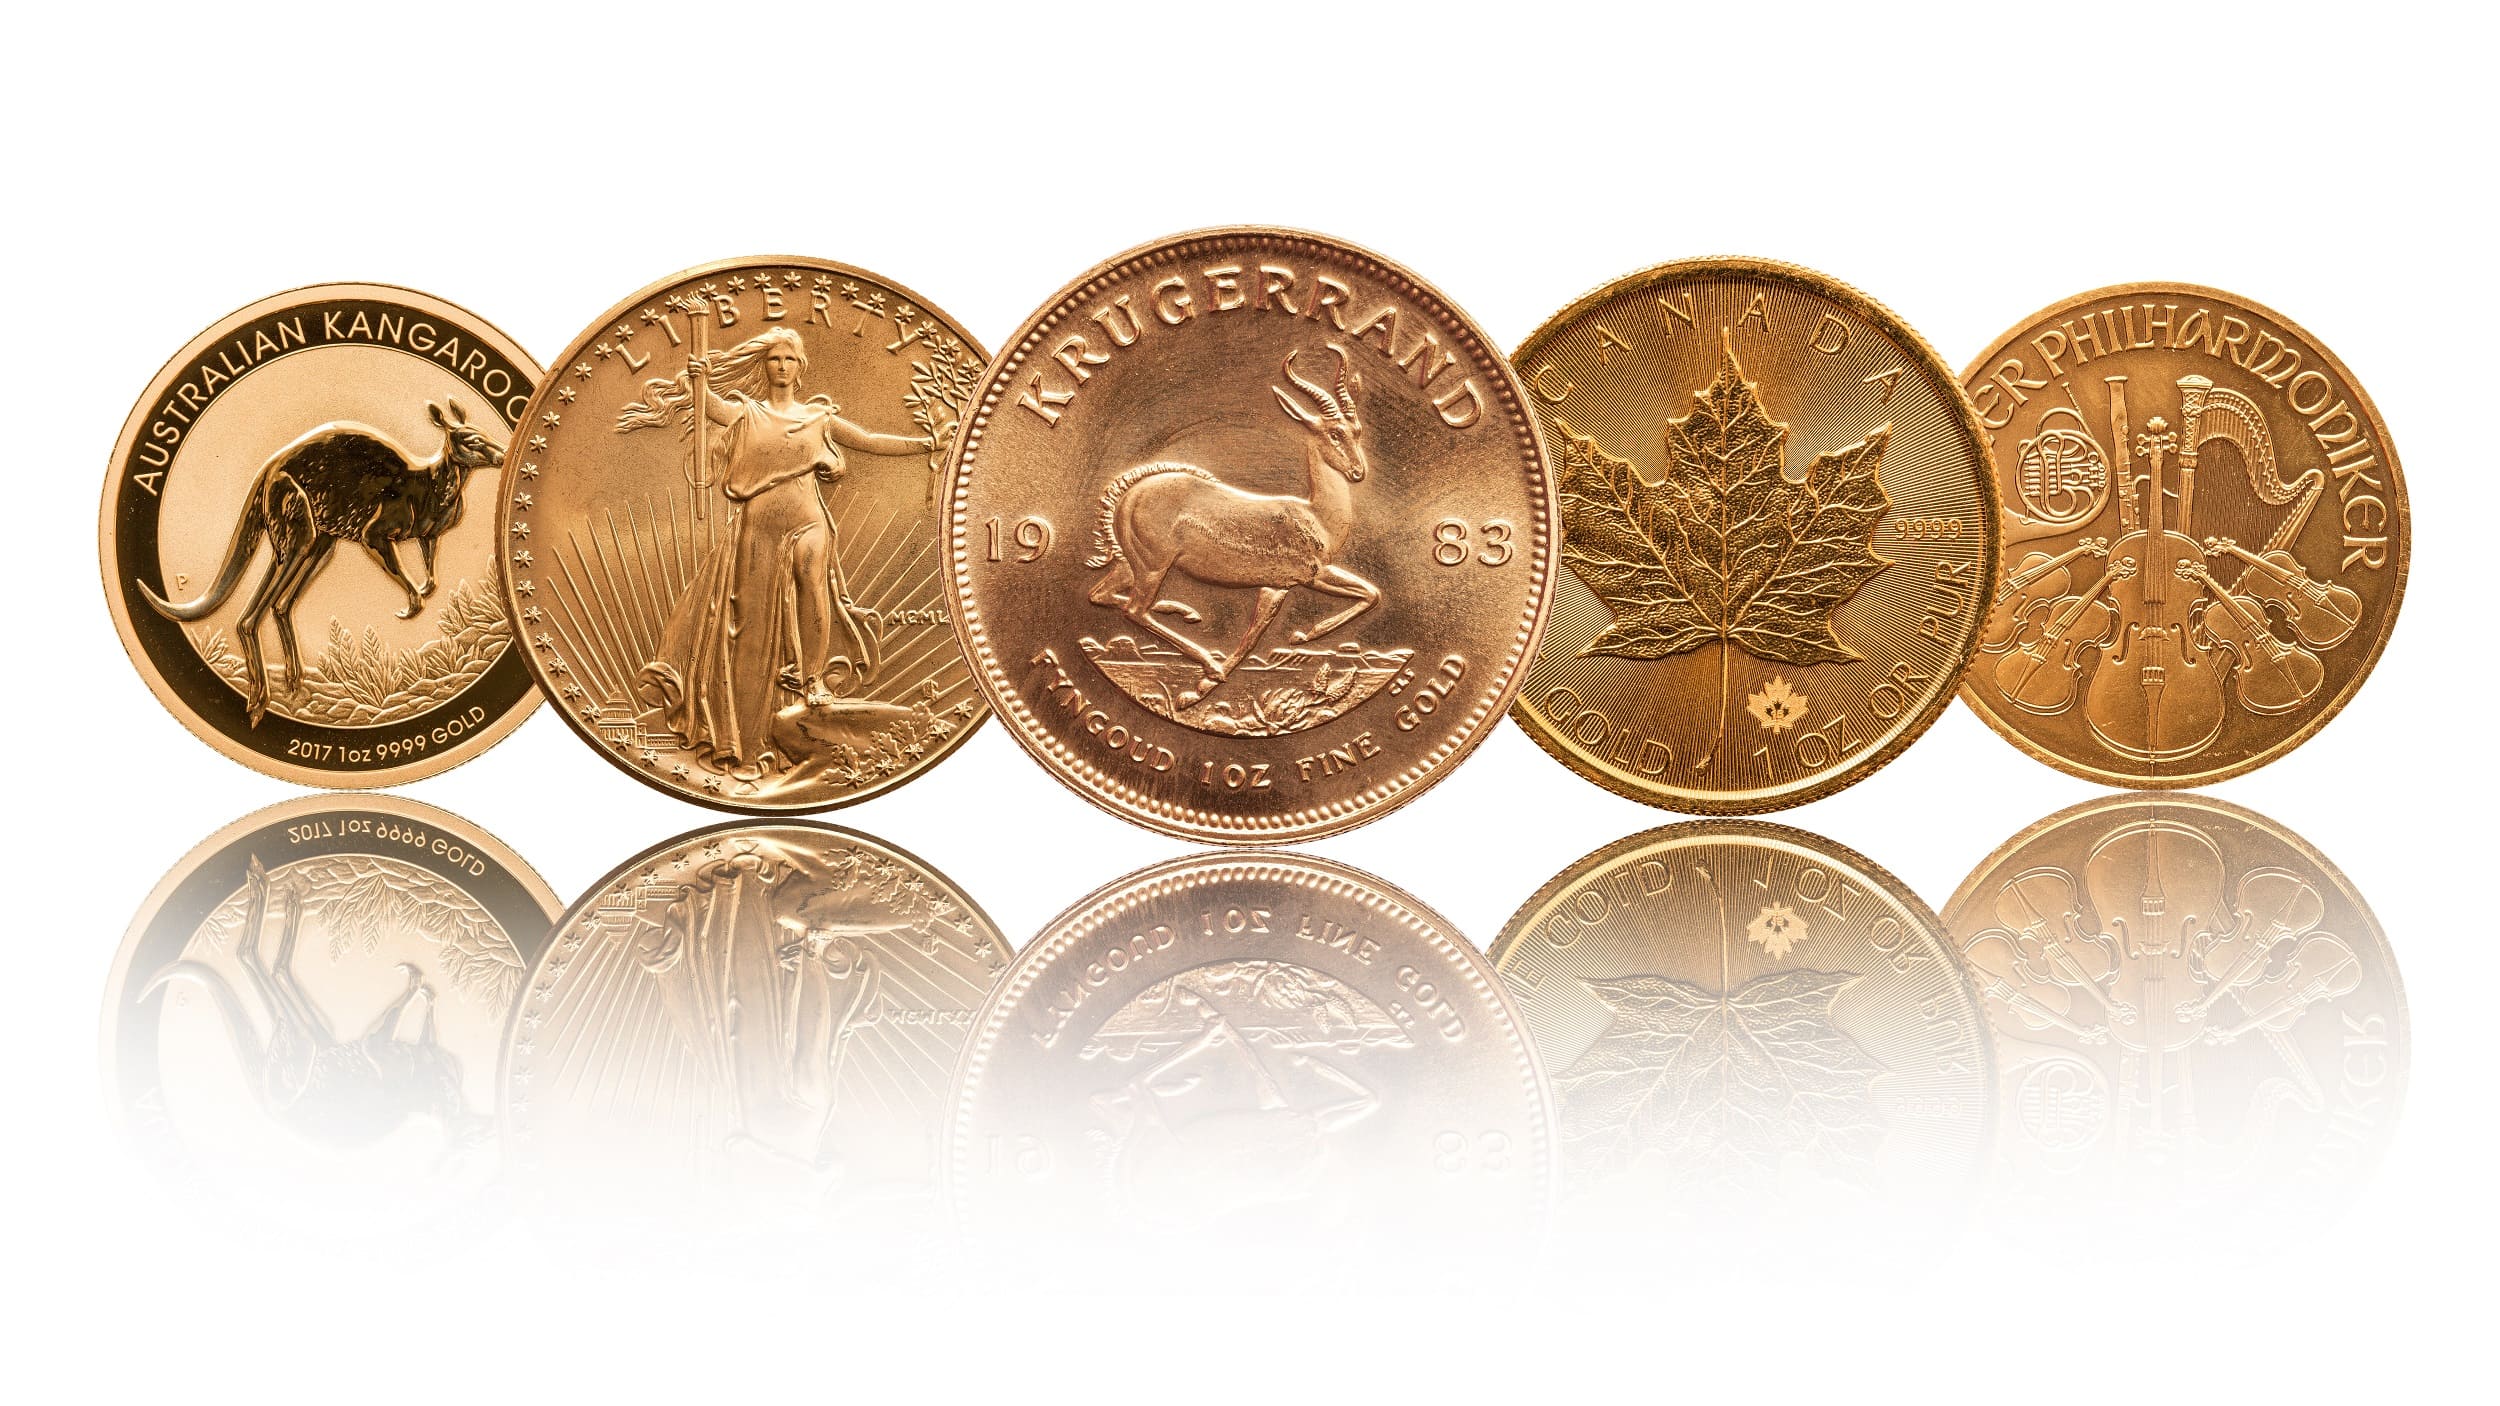 Bild von Verschiedenen Anlagegoldmünzen wie Krügerrand, Philharmoniker und Maple Leaf